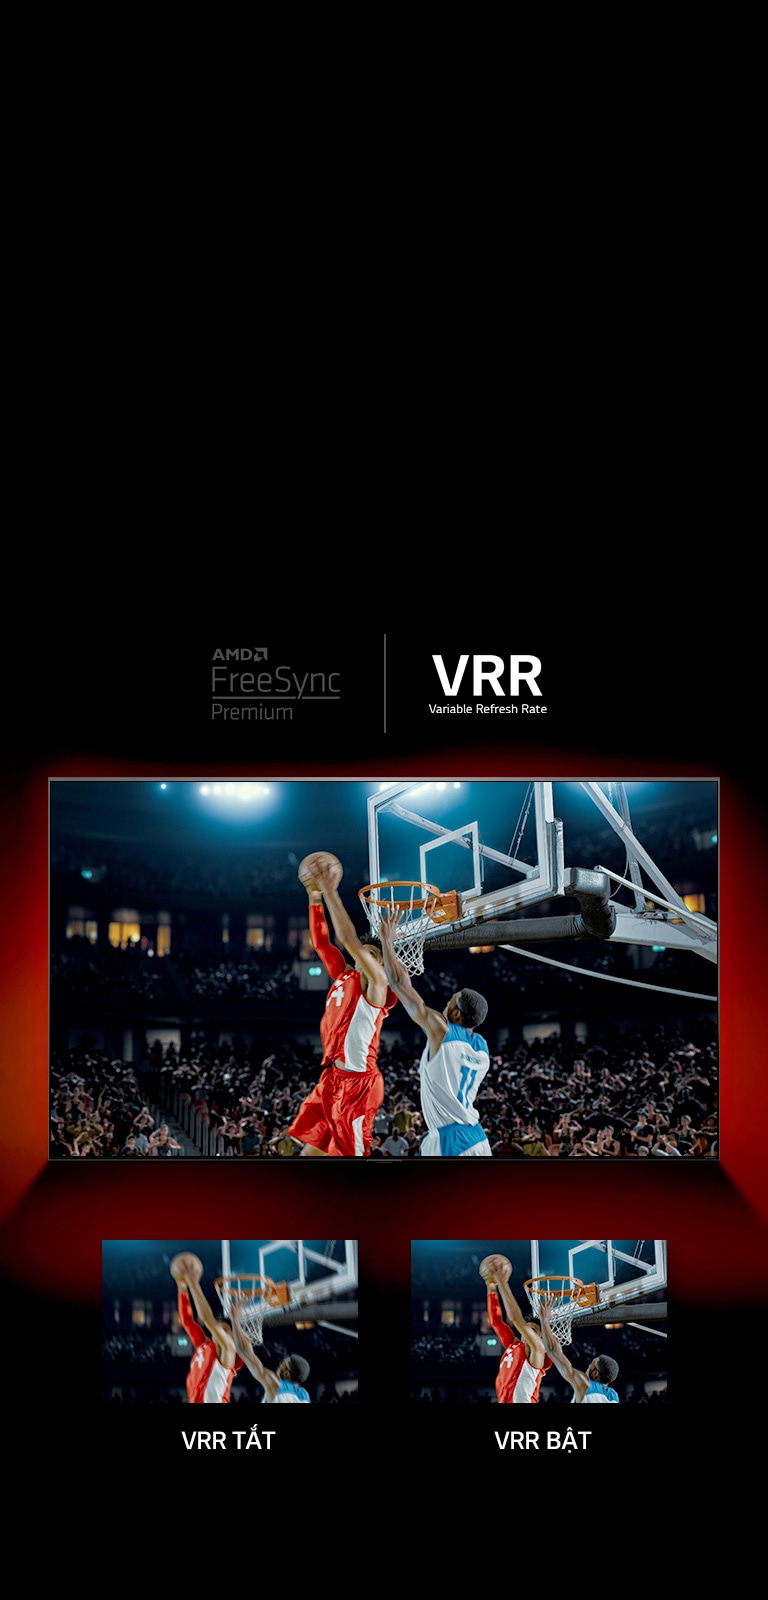 TV QNED đặt trước bức tường màu đỏ - hình ảnh trên màn hình cho thấy một trận bóng rổ với hai người chơi đang chơi game. Ngay bên dưới, có hai ô hình ảnh. Hình bên trái có chữ VRR TẮT và hiển thị một hình ảnh bị mờ, và hình bên phải có chữ VRR BẬT và hiển thị cùng một hình ảnh.